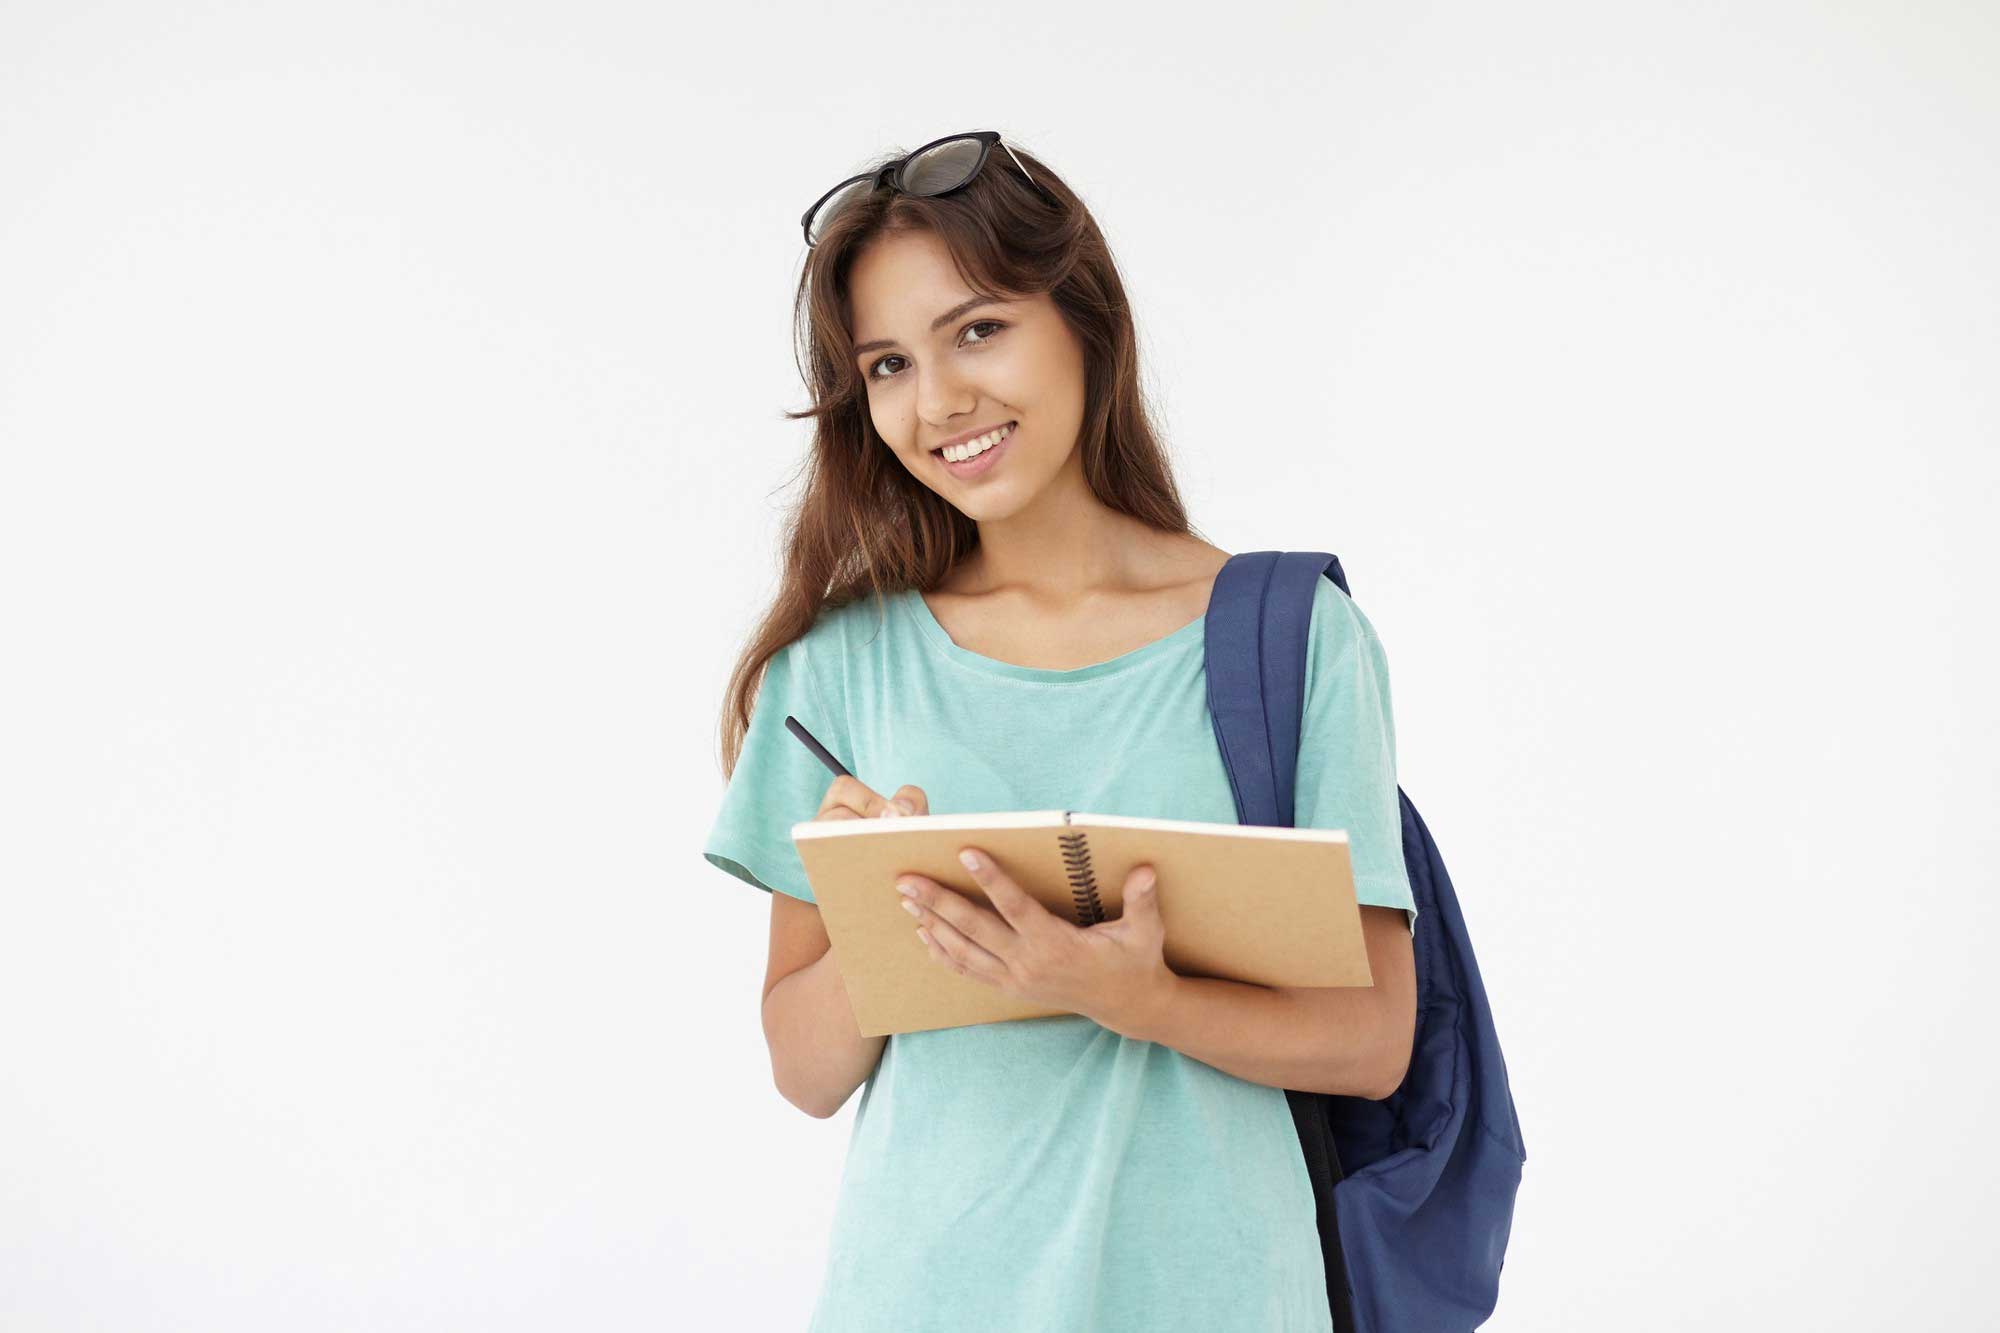 Imagen de una estudiante de pie con una libreta en sus manos